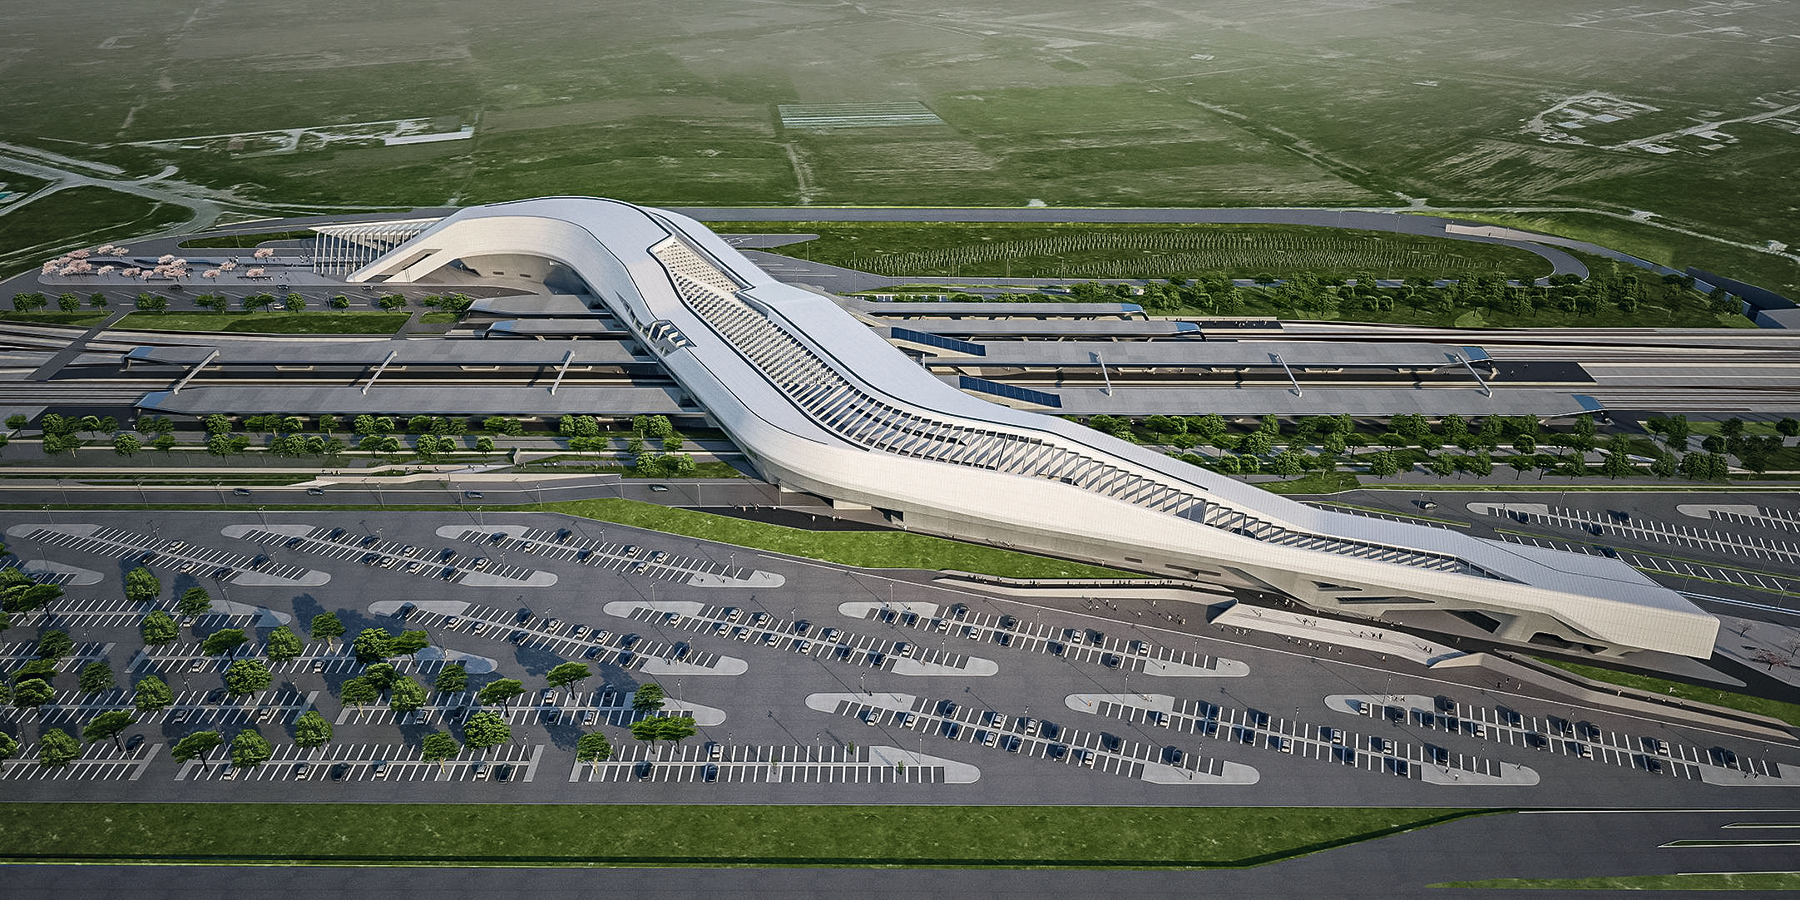 Nádraží projektované britskou architektkou iráckého původu Zahou Hadid, připomínající svým tvarem most, se vznáší 30 metrů nad kolejištěm. Toto nádraží futuristického vzhledu tak funguje jako brána do Neapole. (Foto: Zaha Hadid Architects)